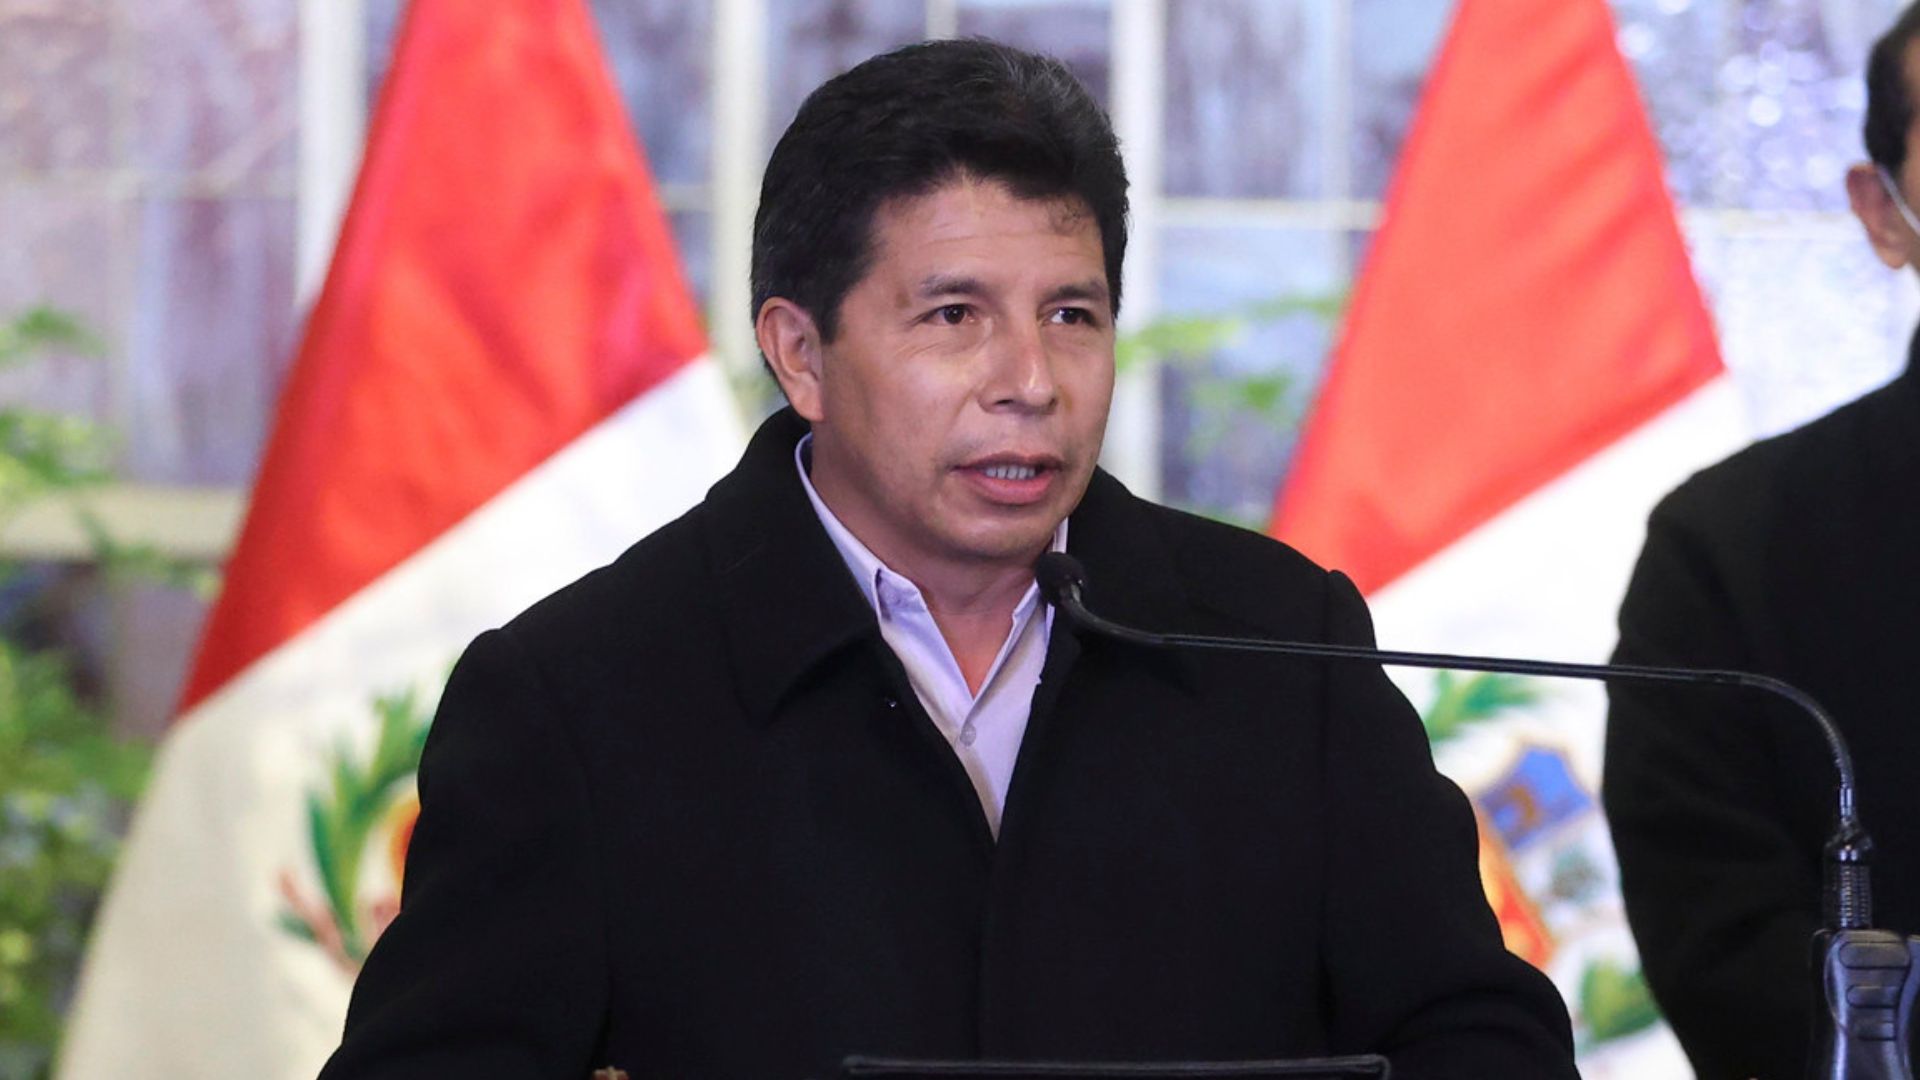 El presidente Pedro Castillo hizo un llamado a la oposición para dialogar sobre los problemas más urgentes del Perú